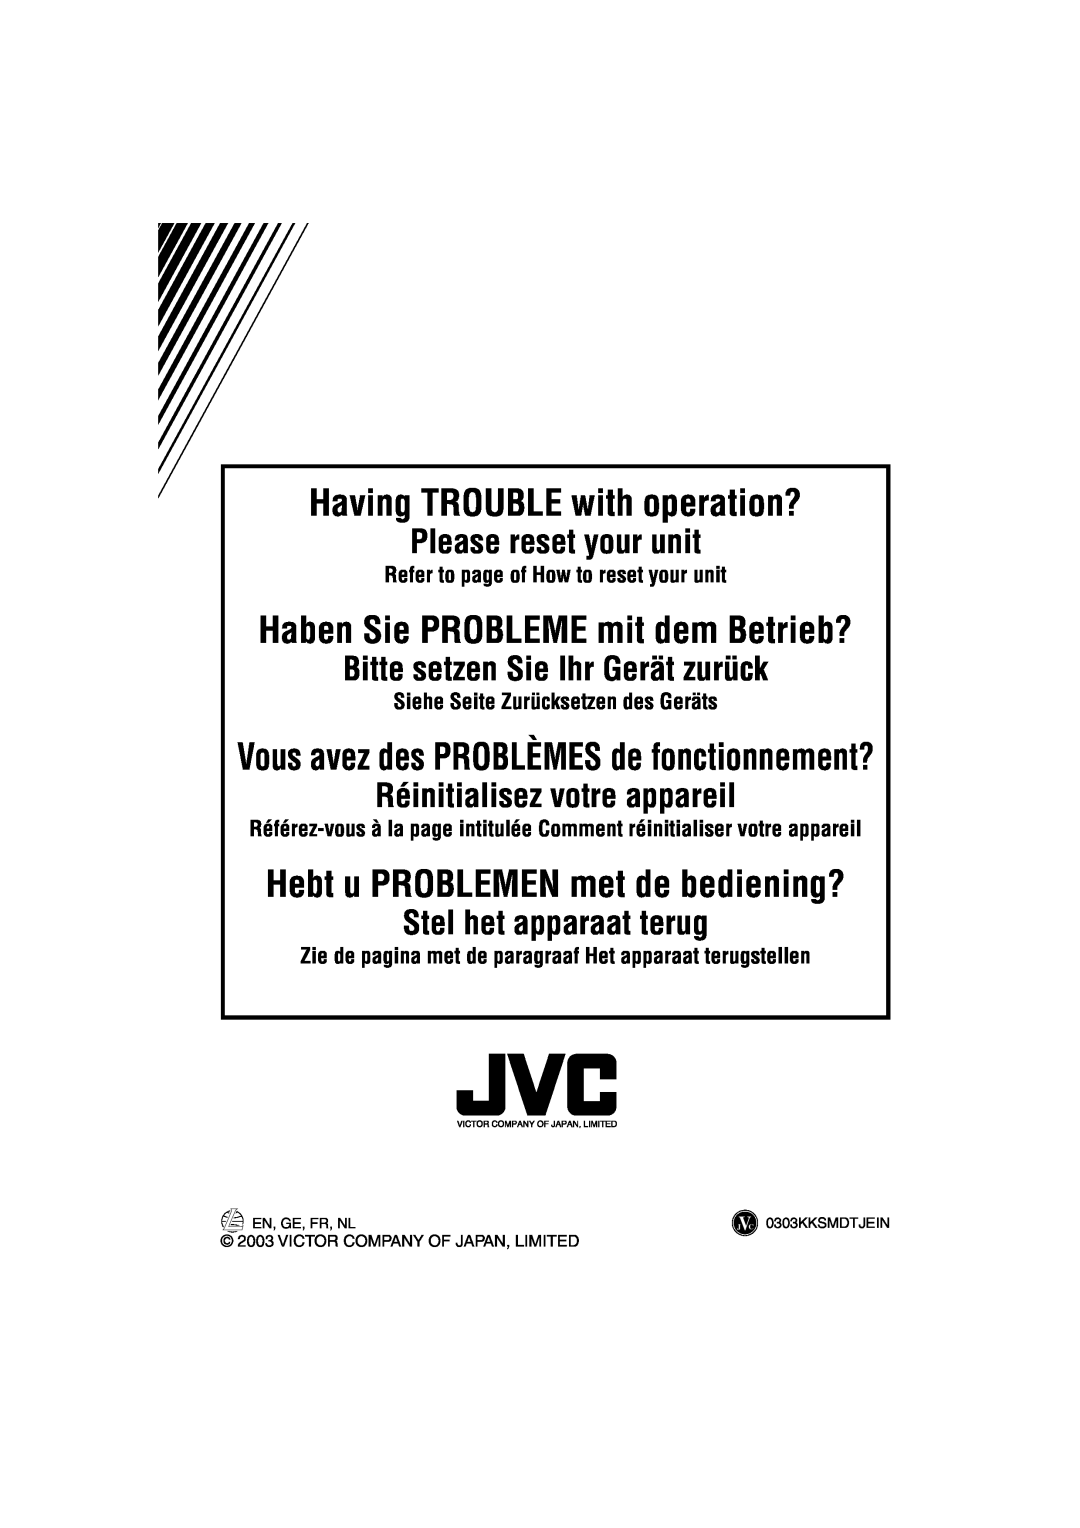 JVC KD-LH1101 manual Having TROUBLE with operation?, Please reset your unit, Bitte setzen Sie Ihr Gerät zurück 